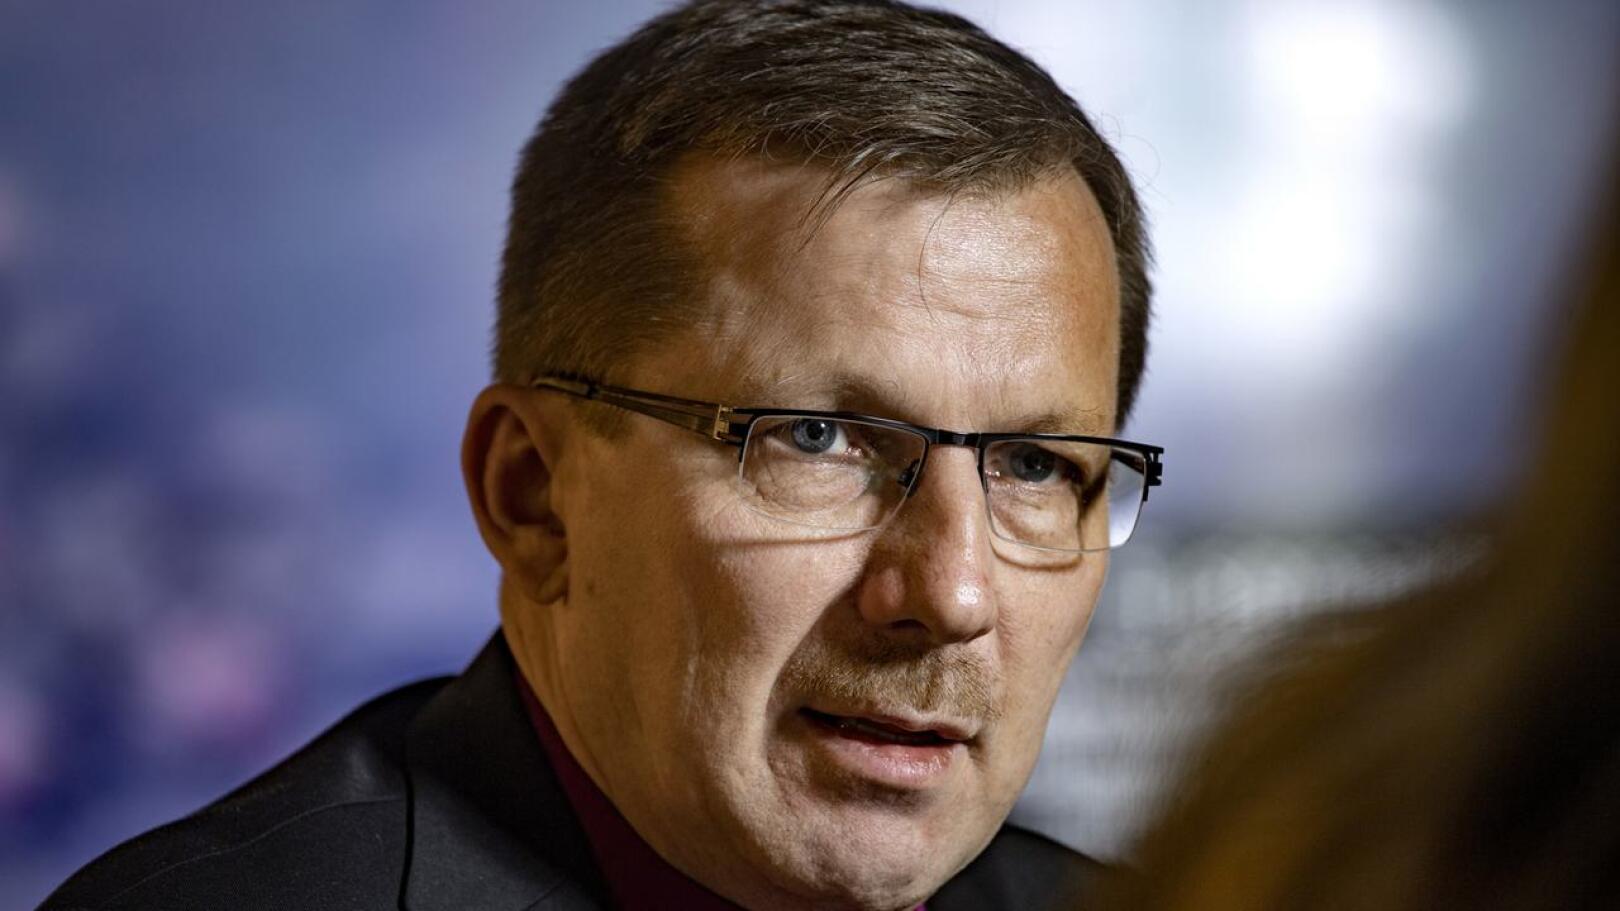 Piispa Jukka Keskitalo kommentoi KHO:n ratkaisua kirkon avioliittokäsityksen toteuttamiseen Haapajärven torilla perjantaina.